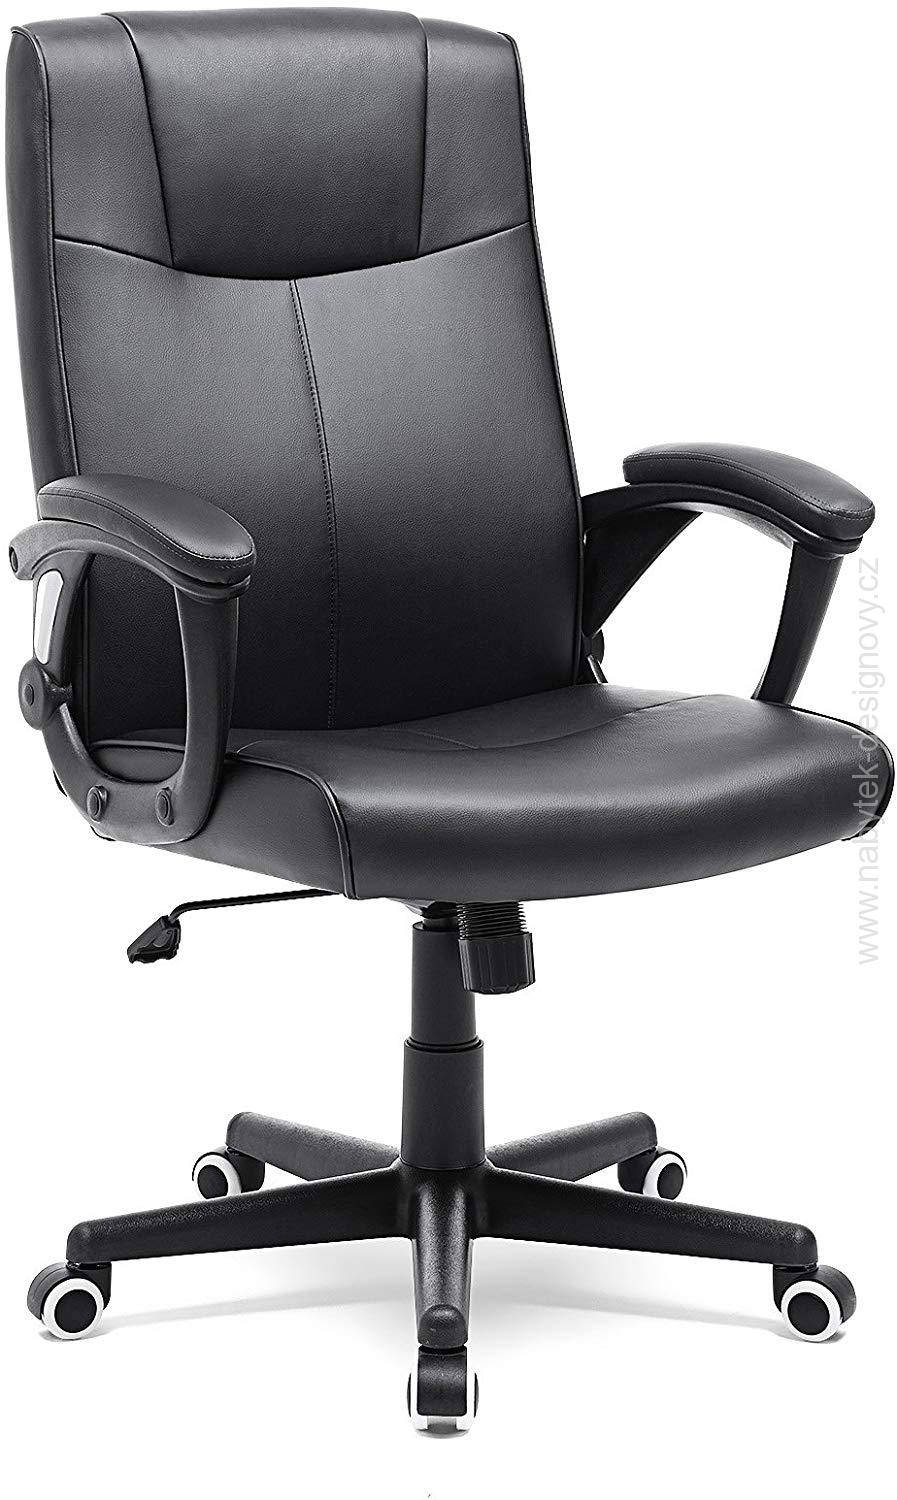 Kancelářská židle PRIM, s funkcí naklonění